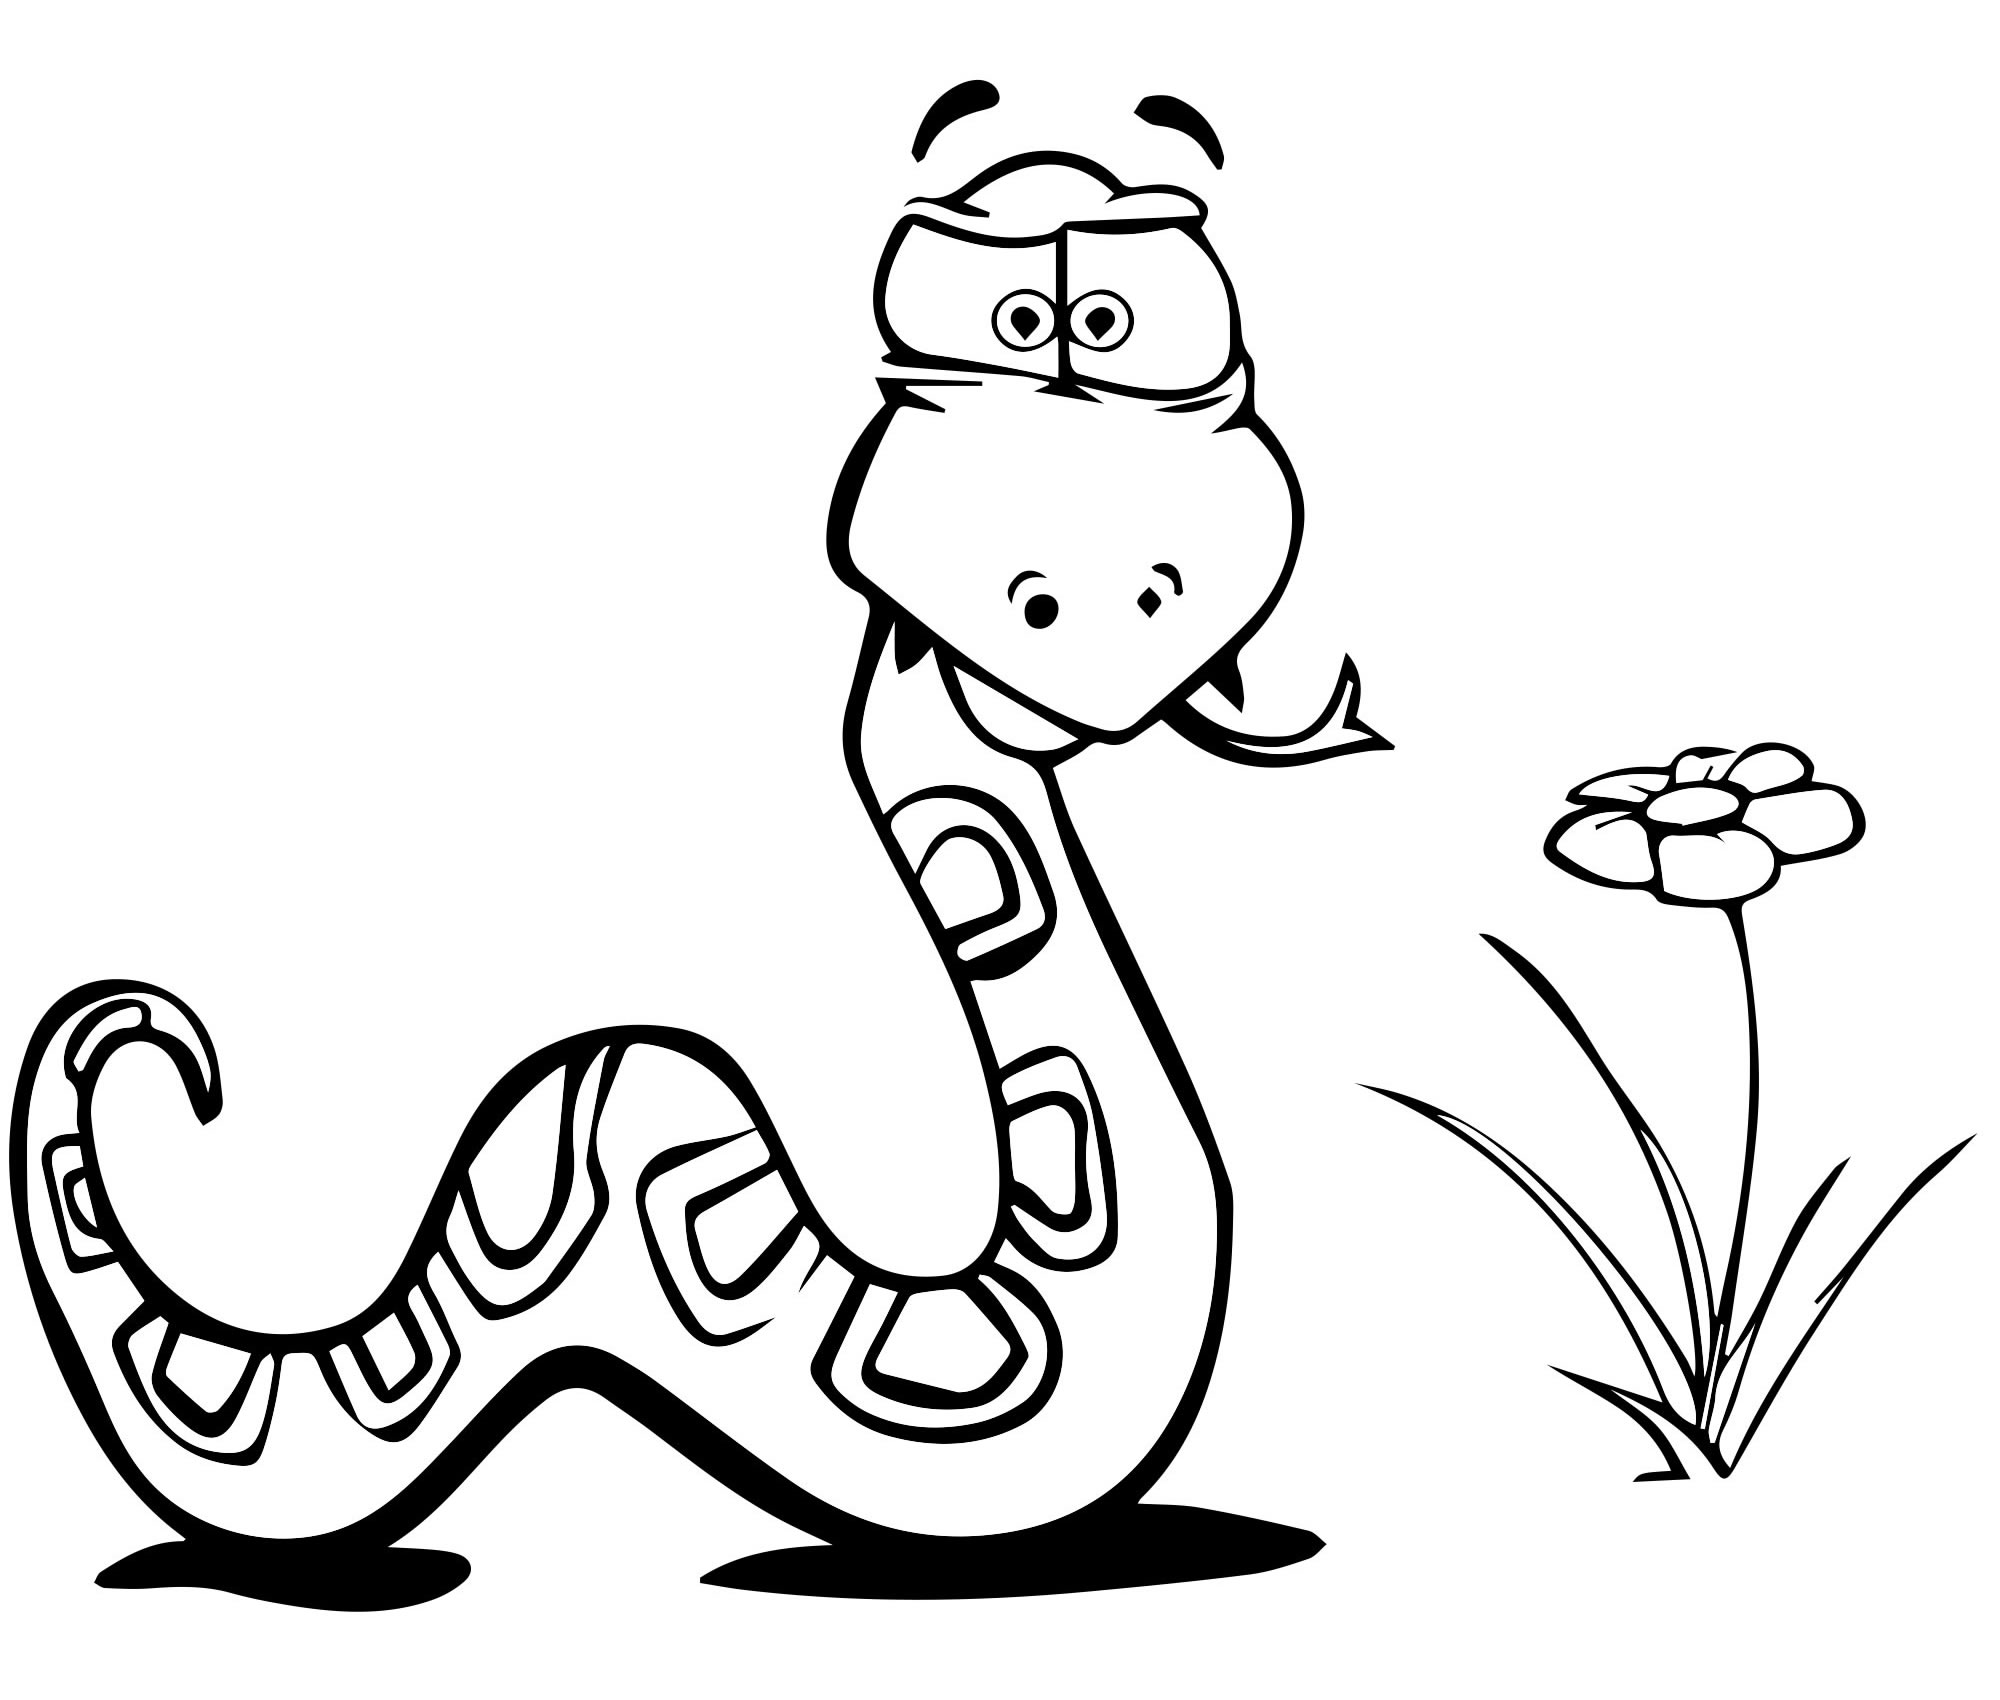 Змея раскраска для детей 4-5 лет